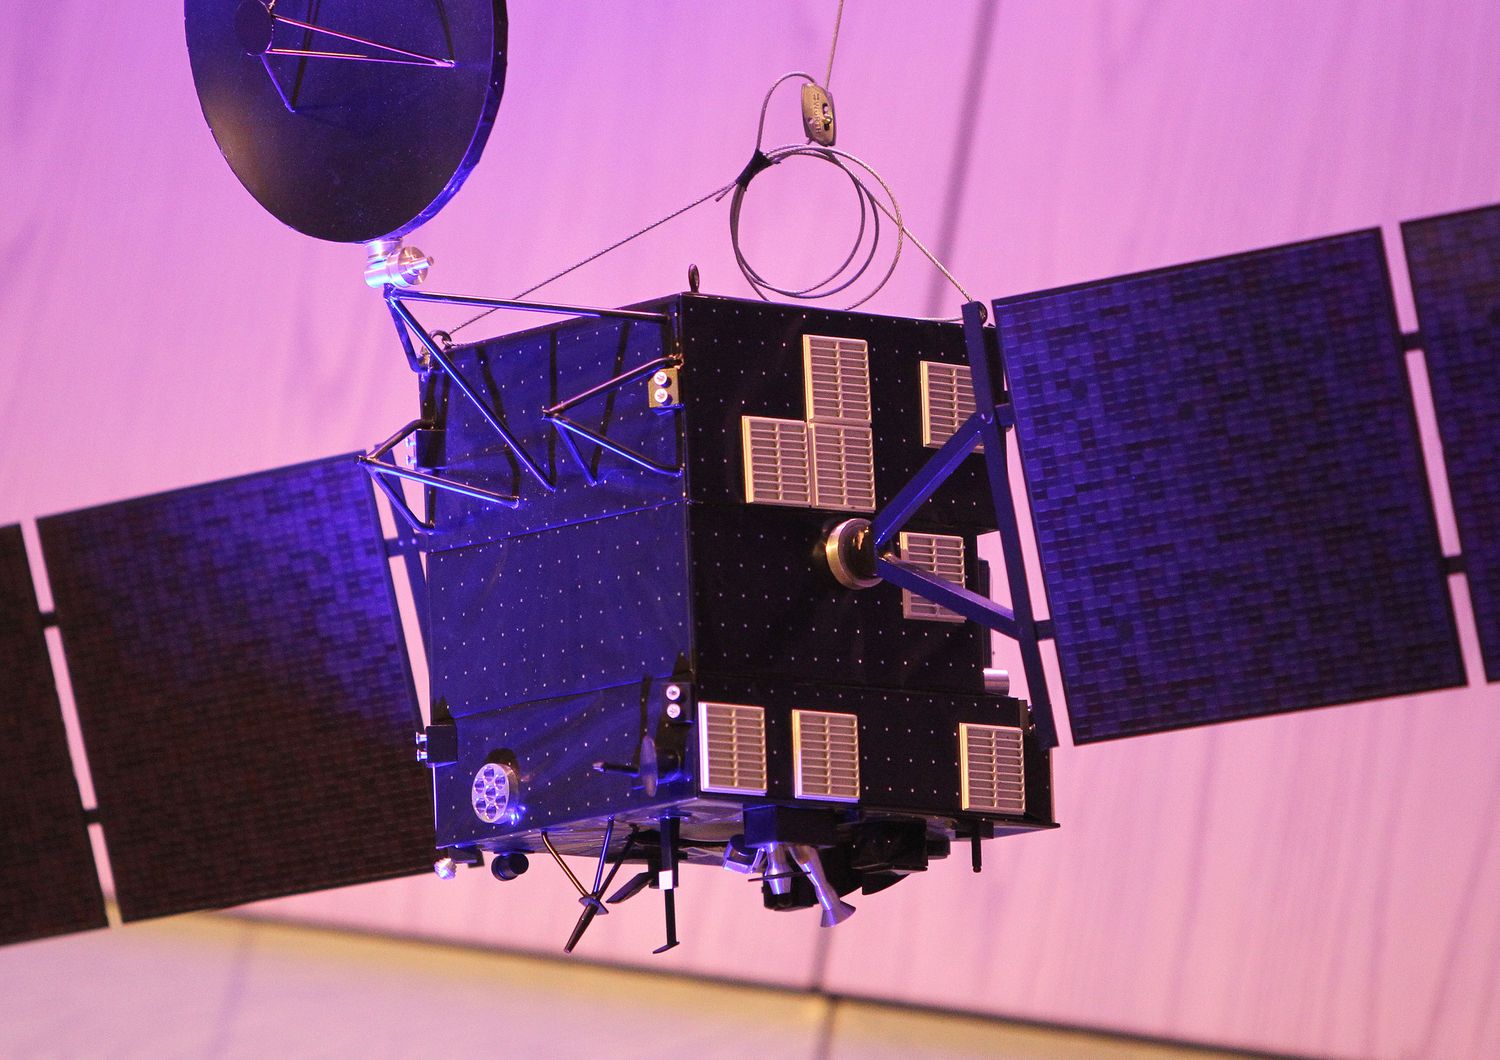 Modello della sonda spaziale Rosetta (Afp)&nbsp;